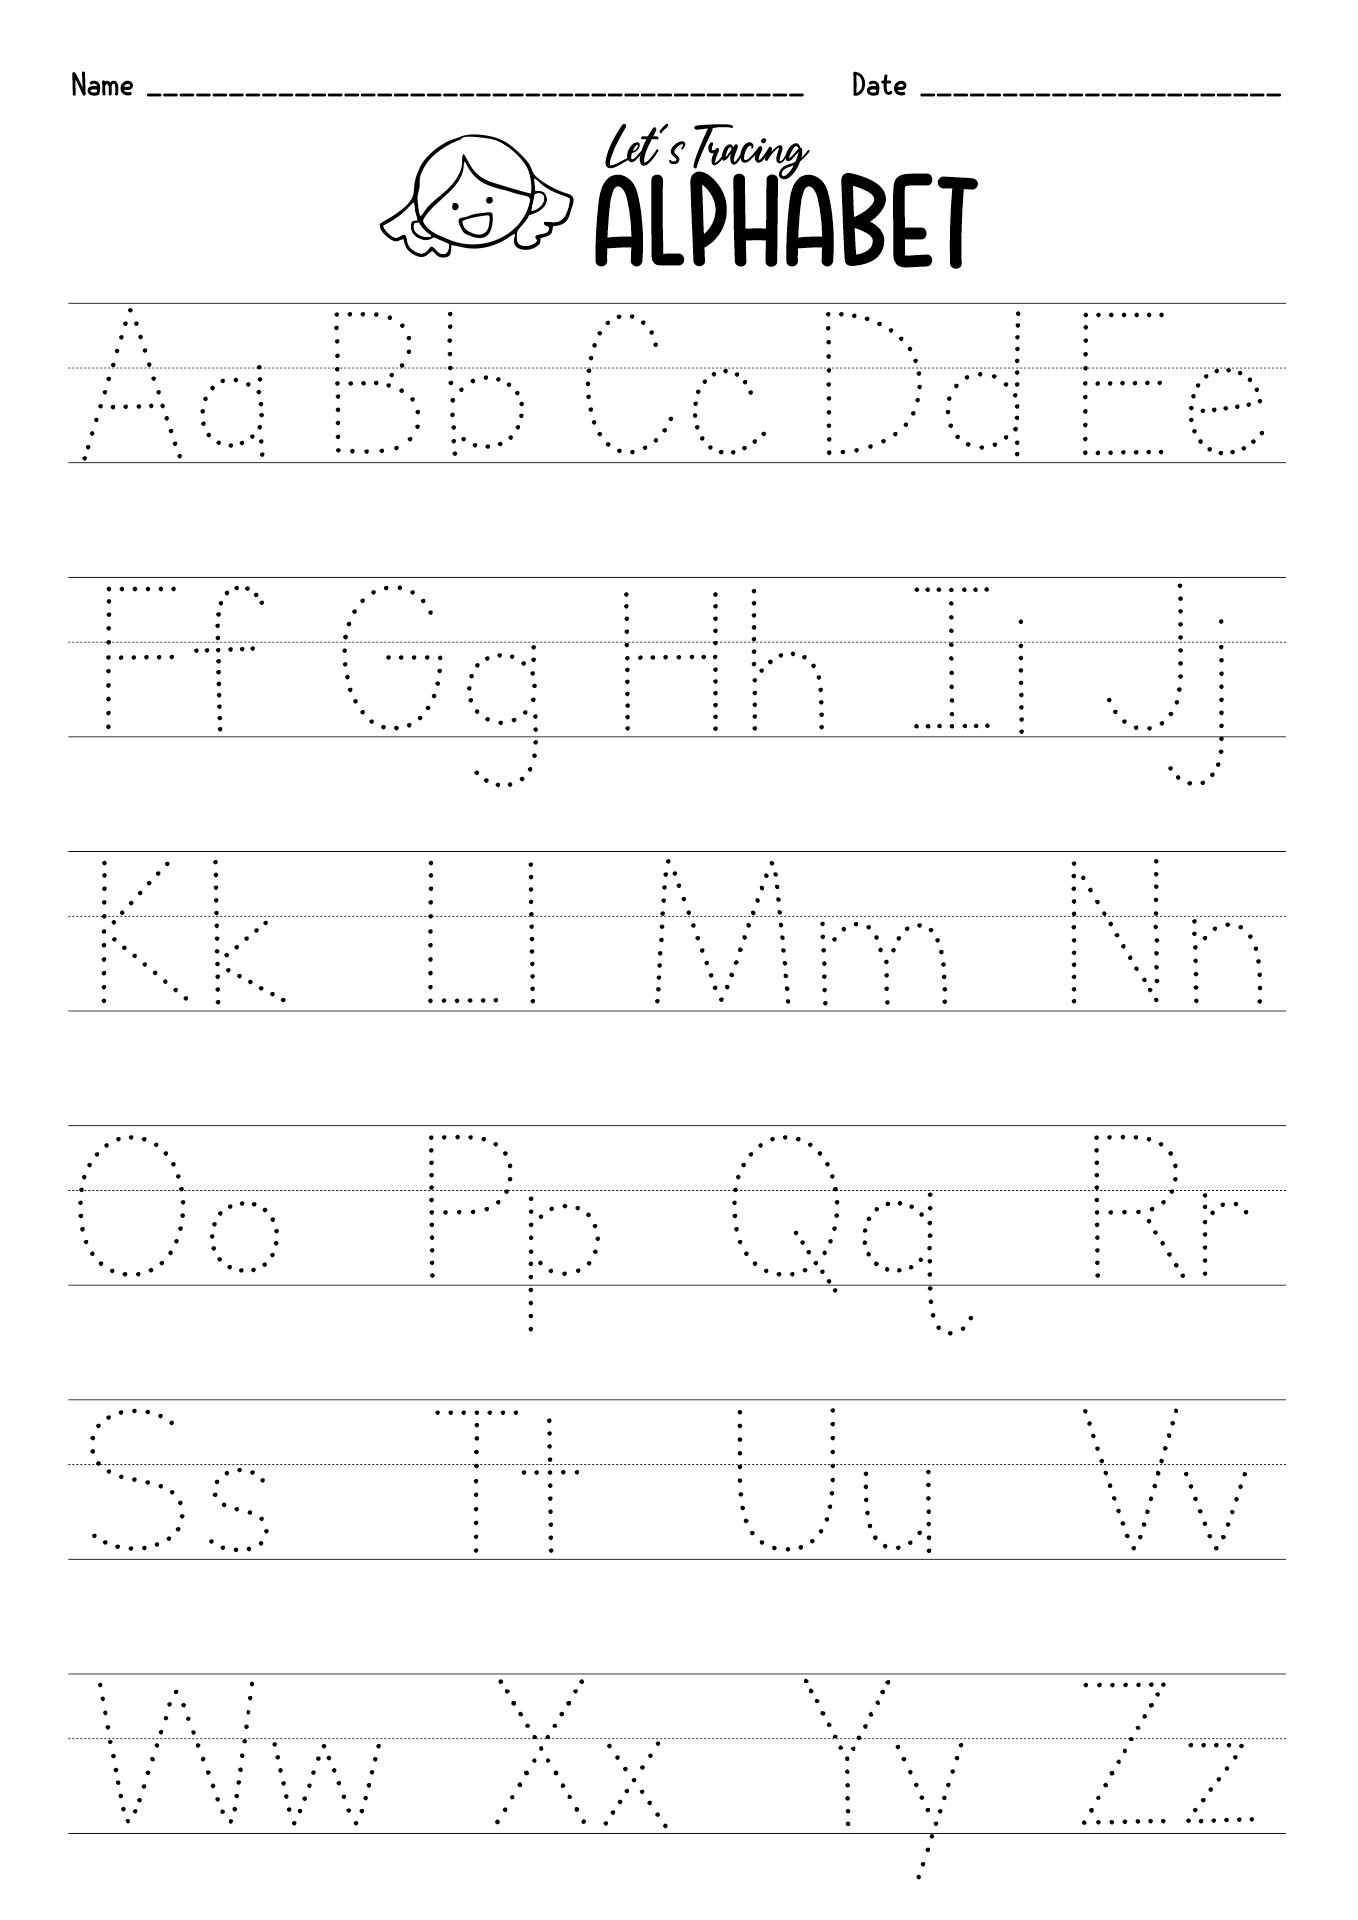 Alphabet Letter Worksheets